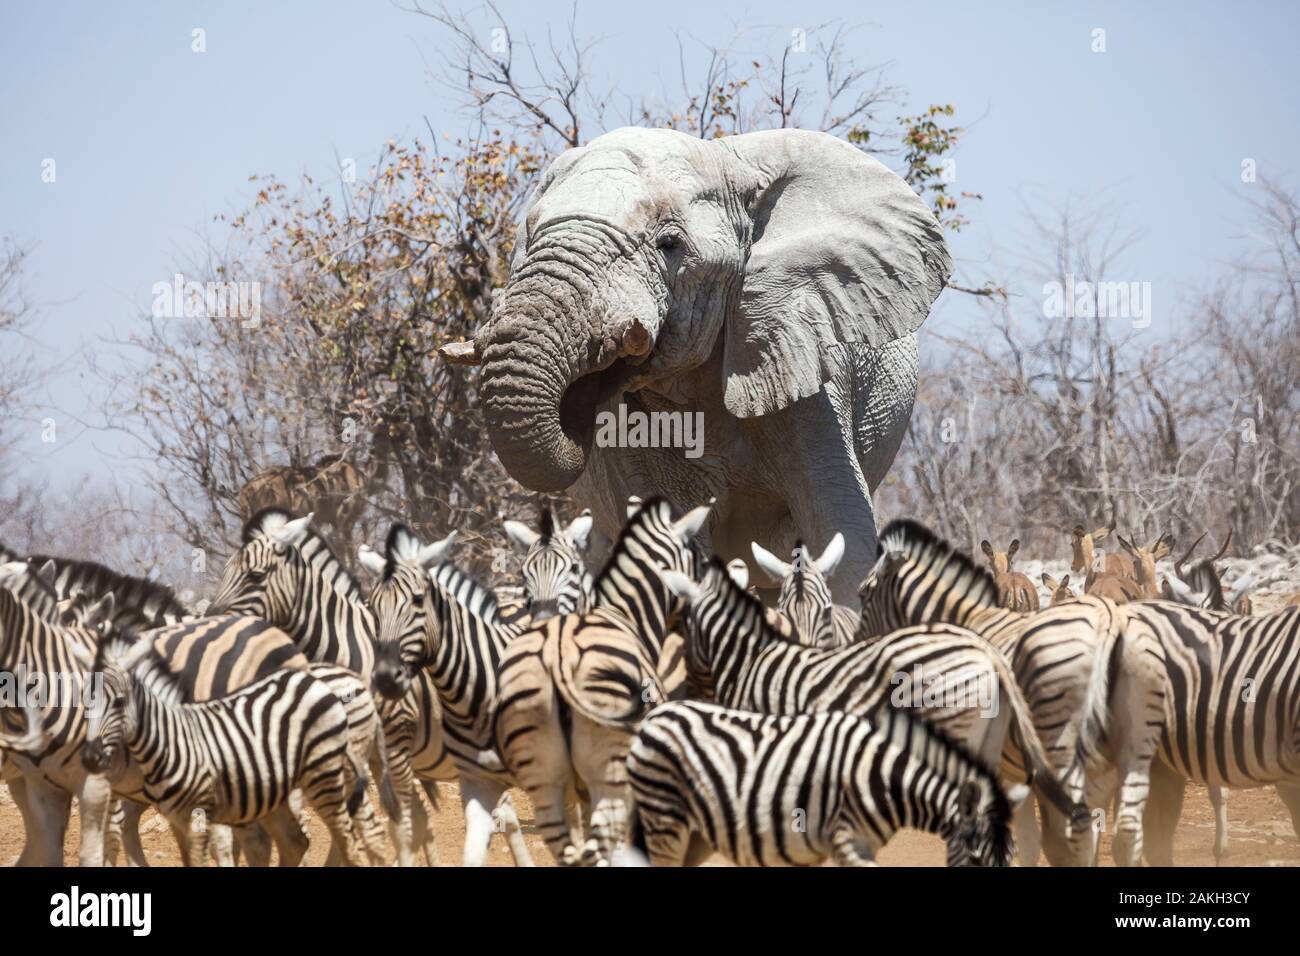 Namibia, Oshikoto province, Etosha National Park, elephant and zebras Stock Photo